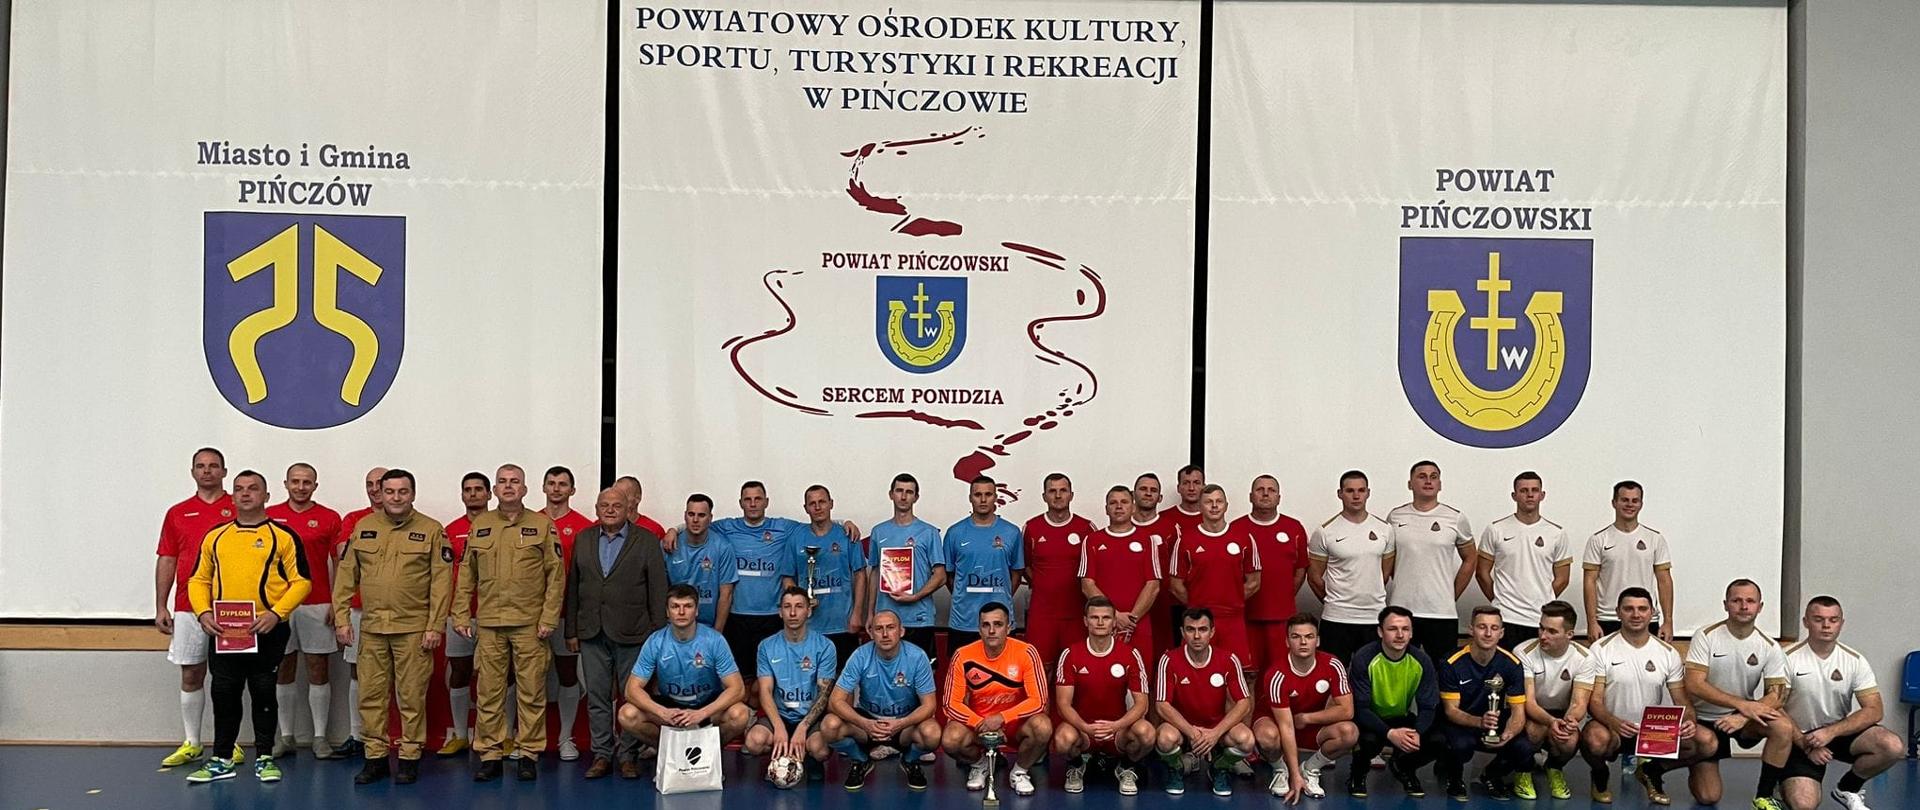 Wszyscy uczestnicy zawodów Finałowych Wojewódzkich Mistrzostw strażaków w halową piłkę nożną o puchar Świętokrzyskiego Komendanta Wojewódzkiego Państwowej Straży Pożarnej na jednym zdjęciu pozują po zakończeniu rywalizacji.